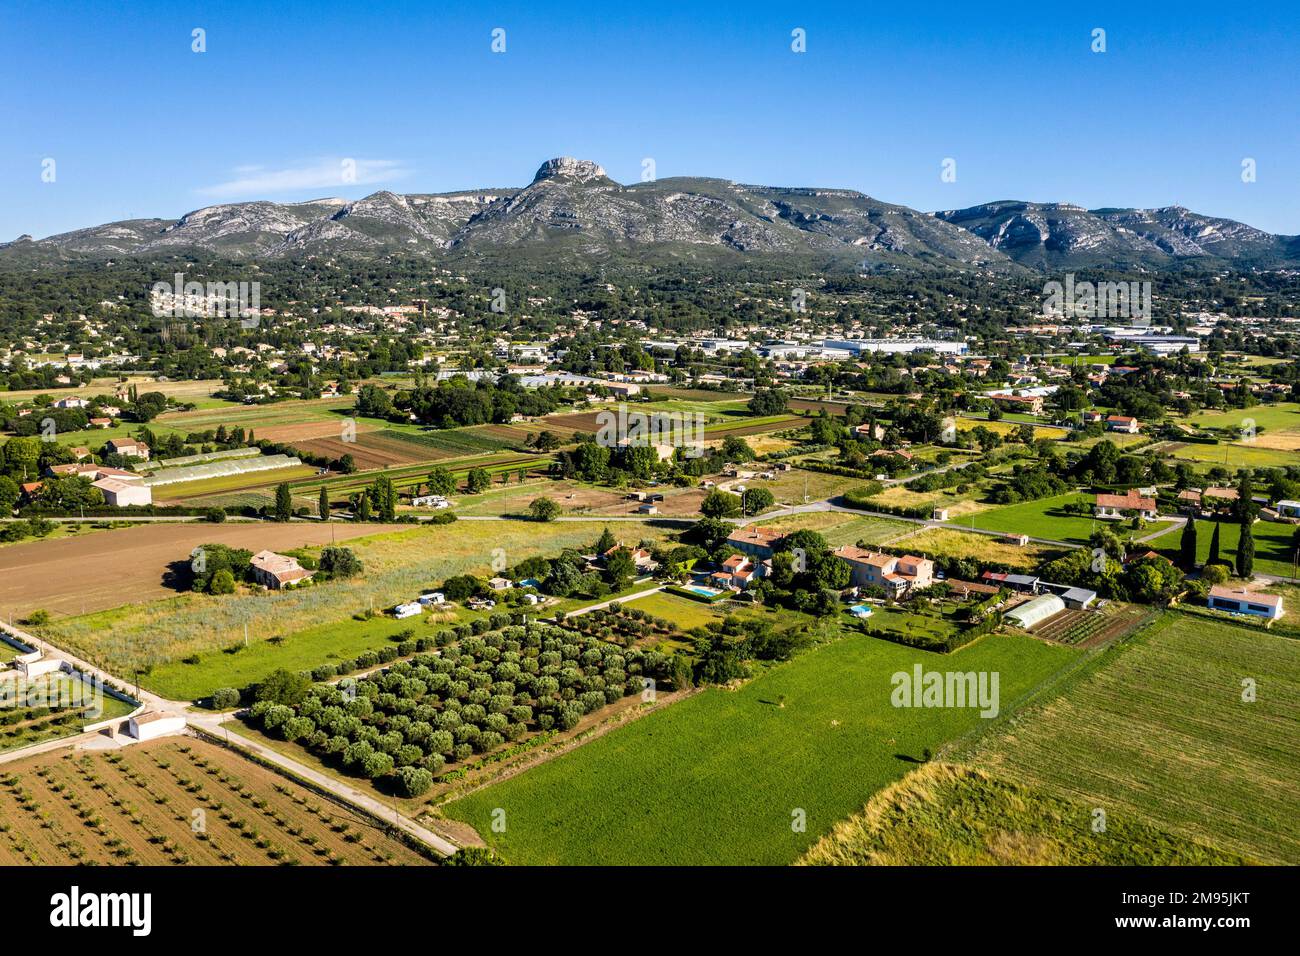 Aubagne (Francia sud-orientale): Veduta aerea di una zona agricola ai margini della città, con un parco industriale e il massiccio del Garlaban nel di Foto Stock